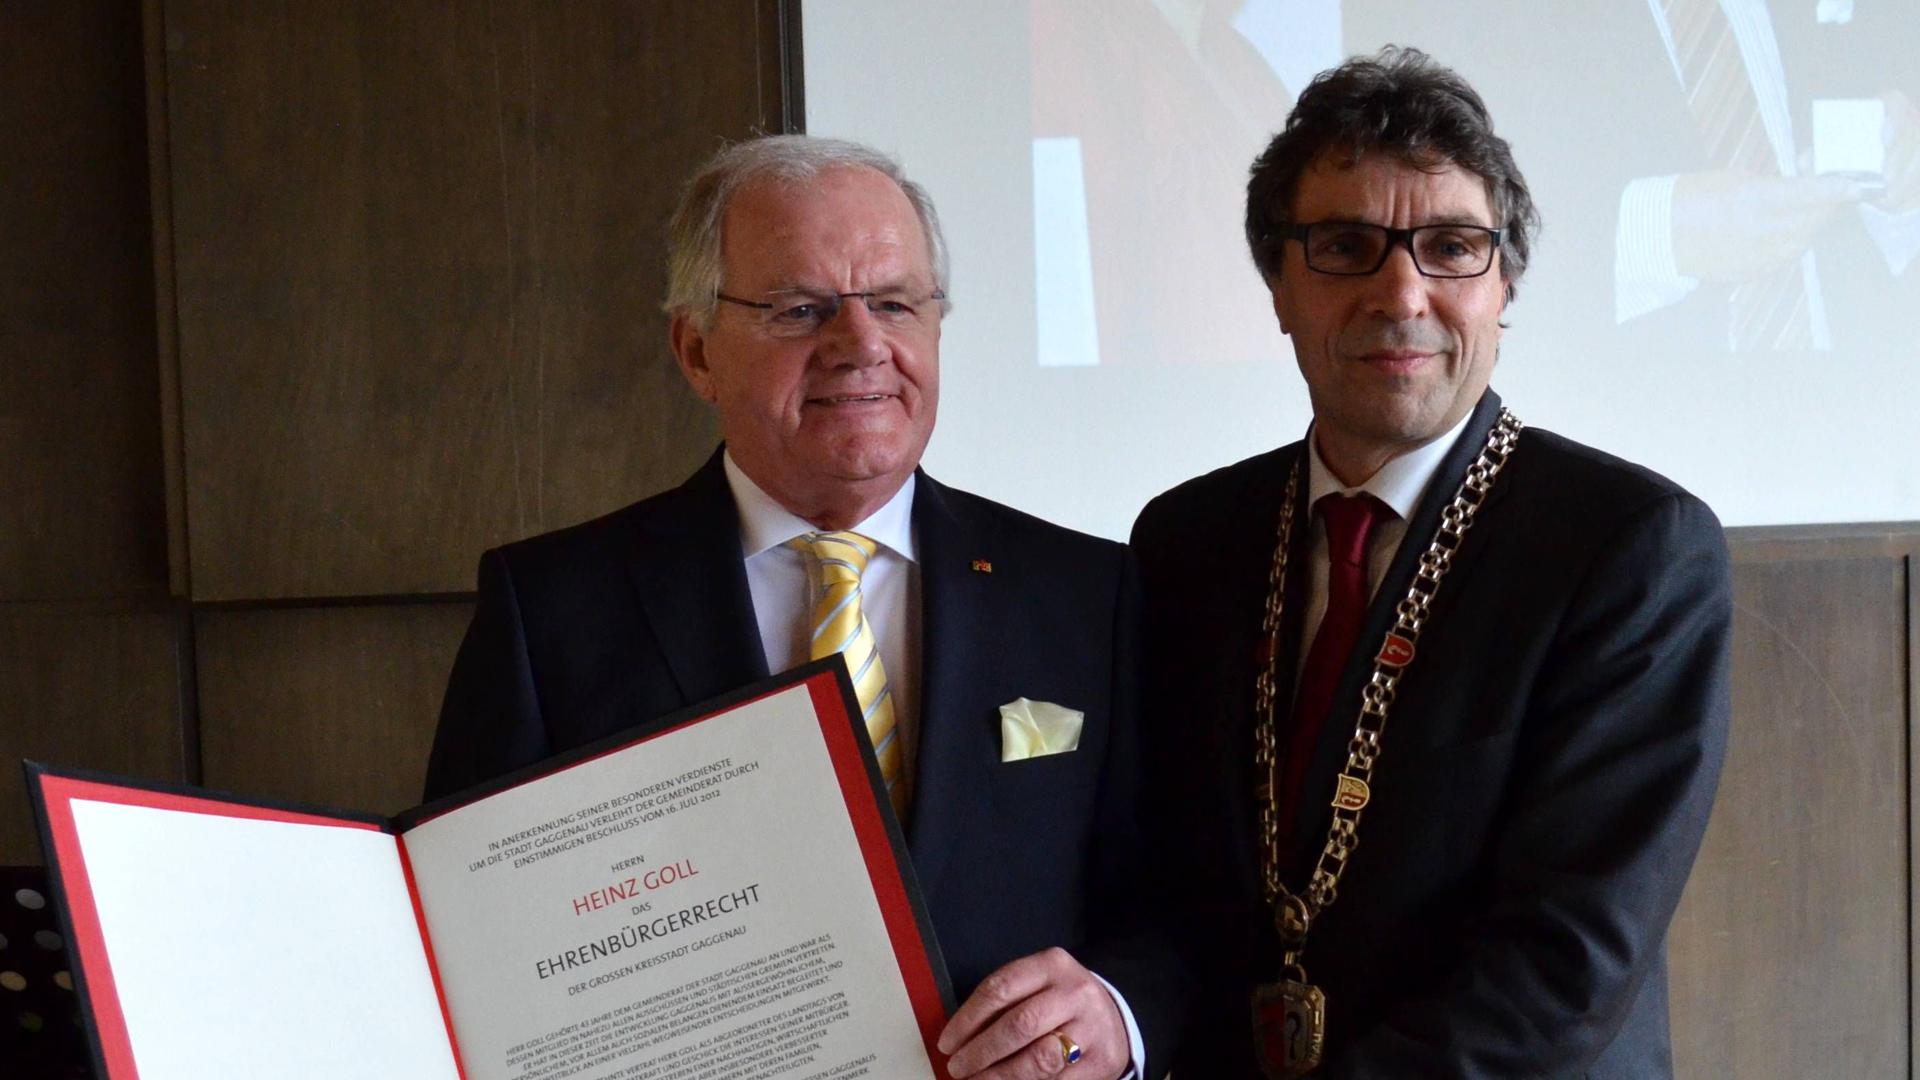 Heinz Goll (links) wird Ehrenbürger der Stadt Gaggenau
Urkunde
Christof Florus